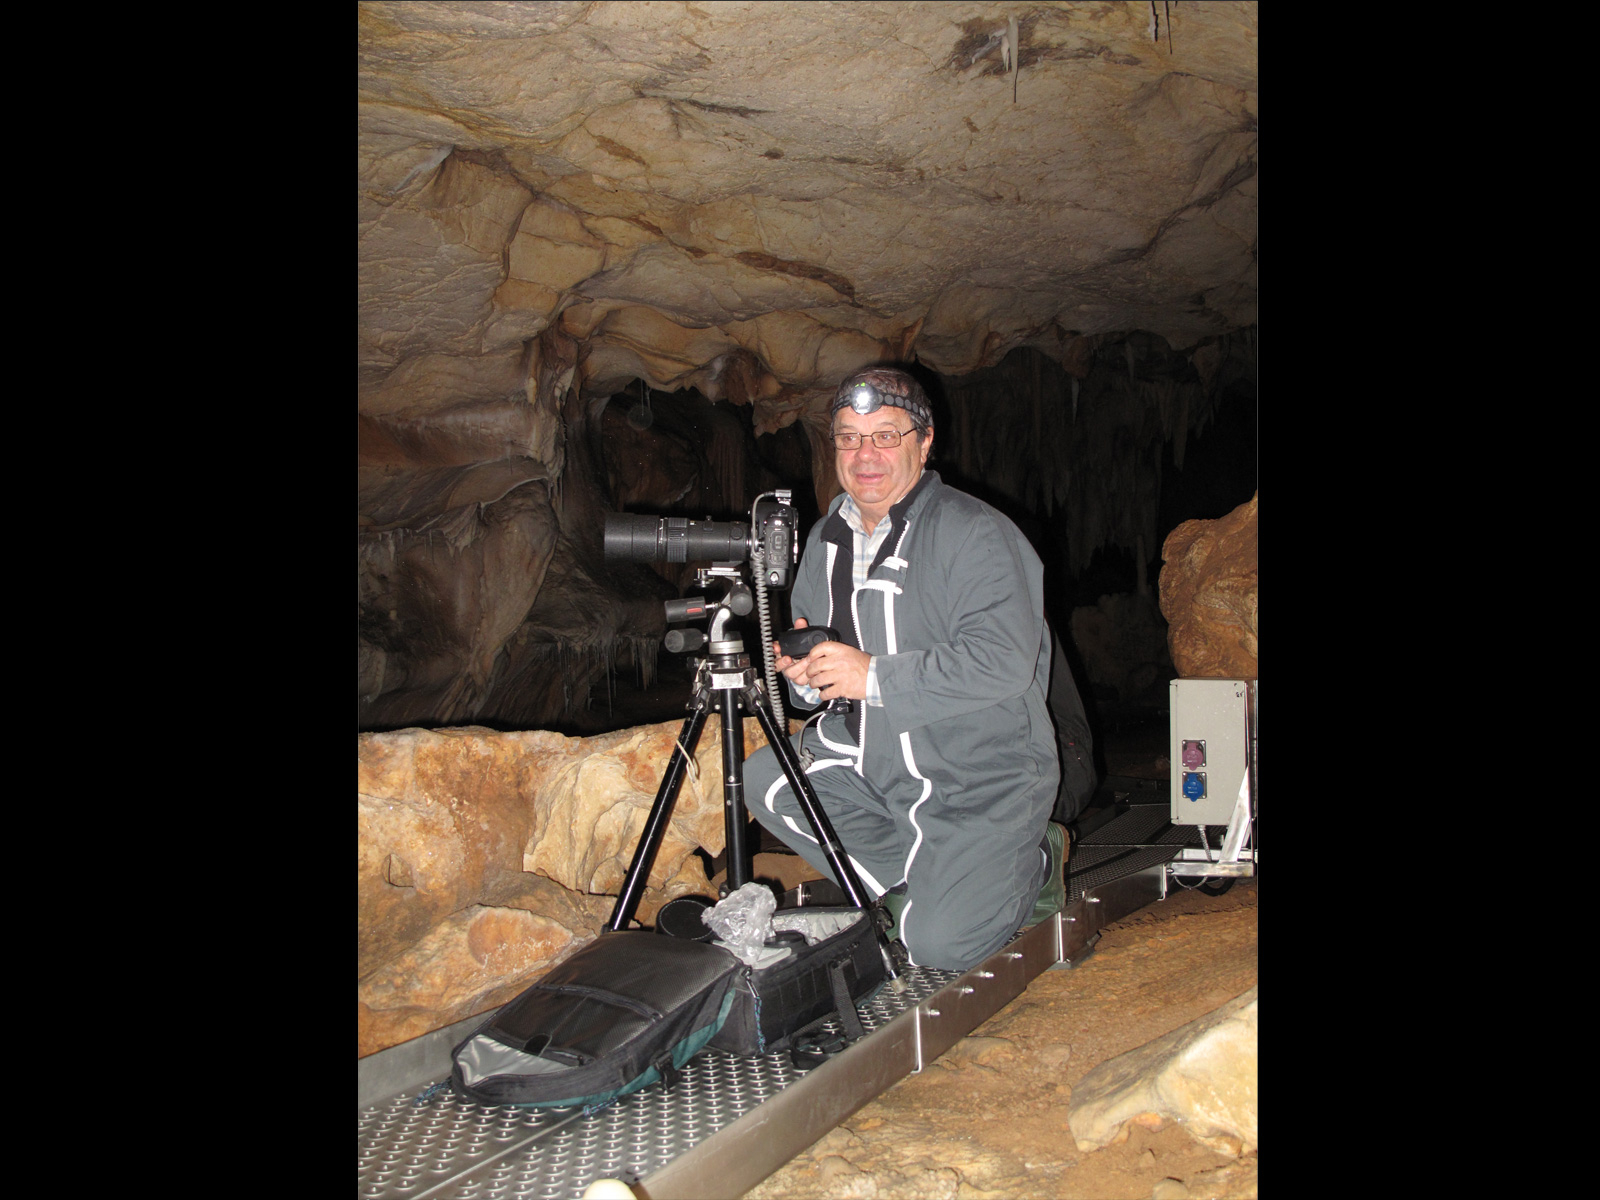 Photographie de Norbert Ajoulat dans la grotte de Chauvet Pont-d'Arc